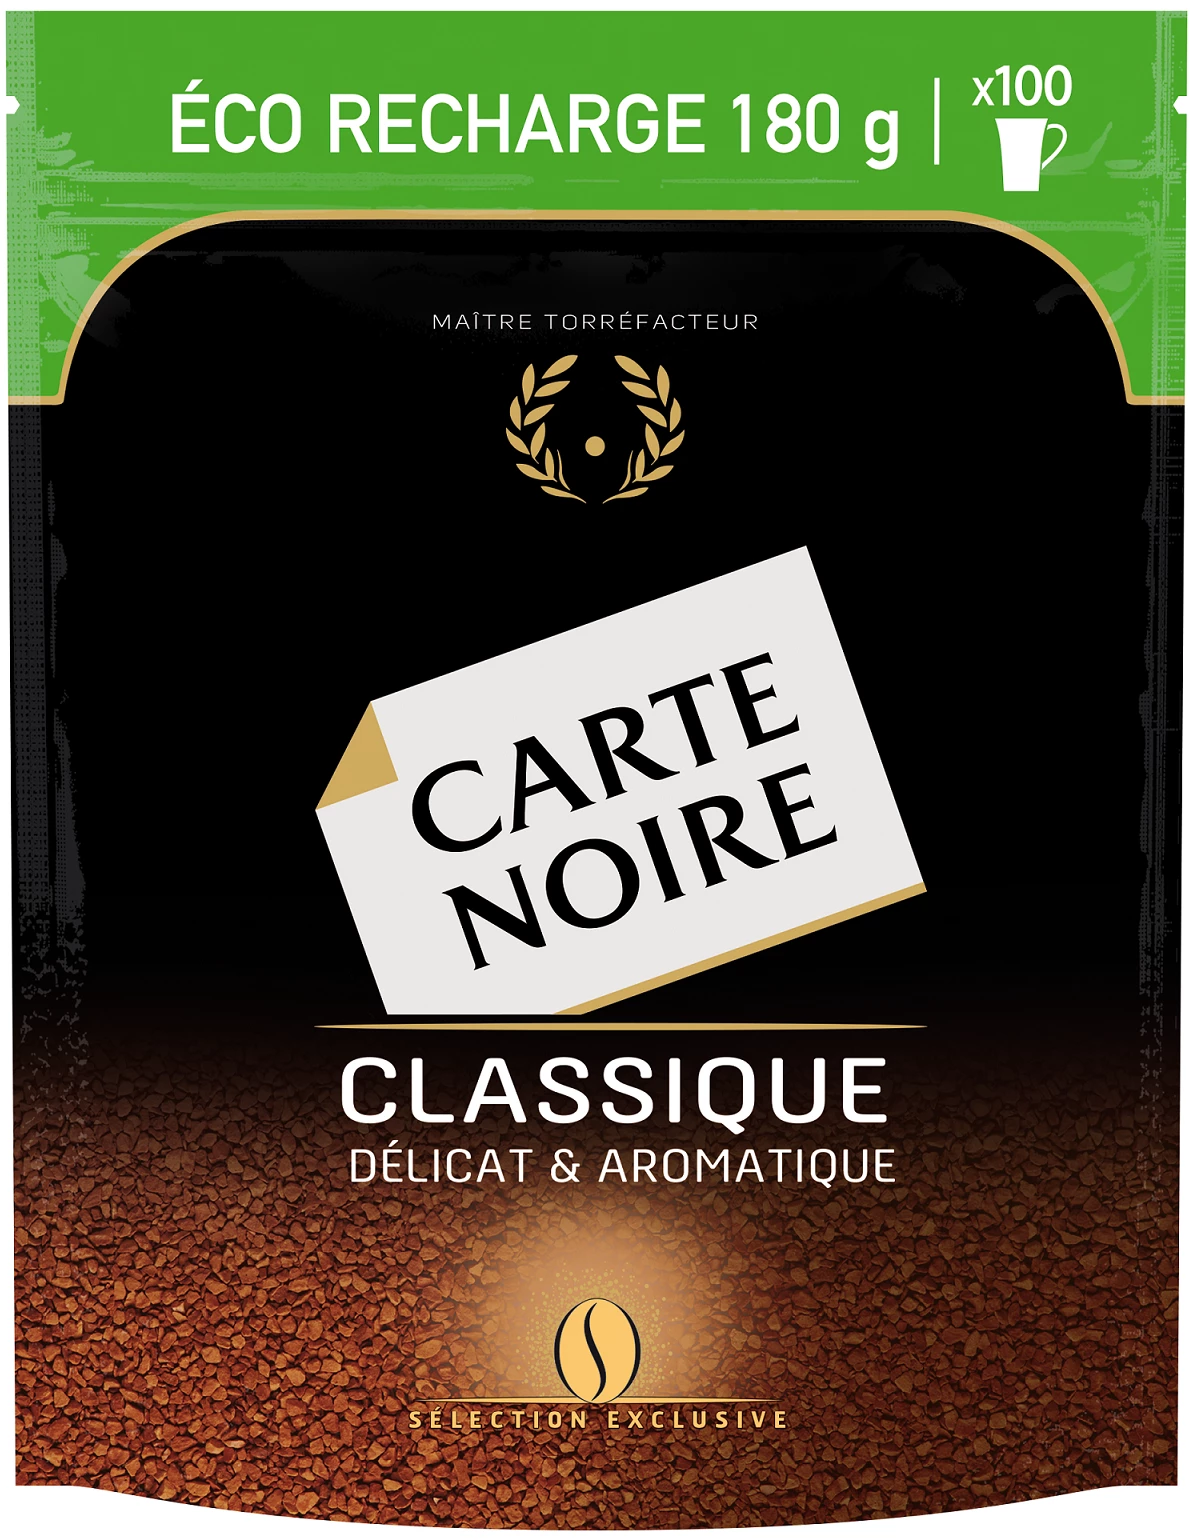 Café Soluble Classic Eco-recharge 180g - CARTE NOIRE